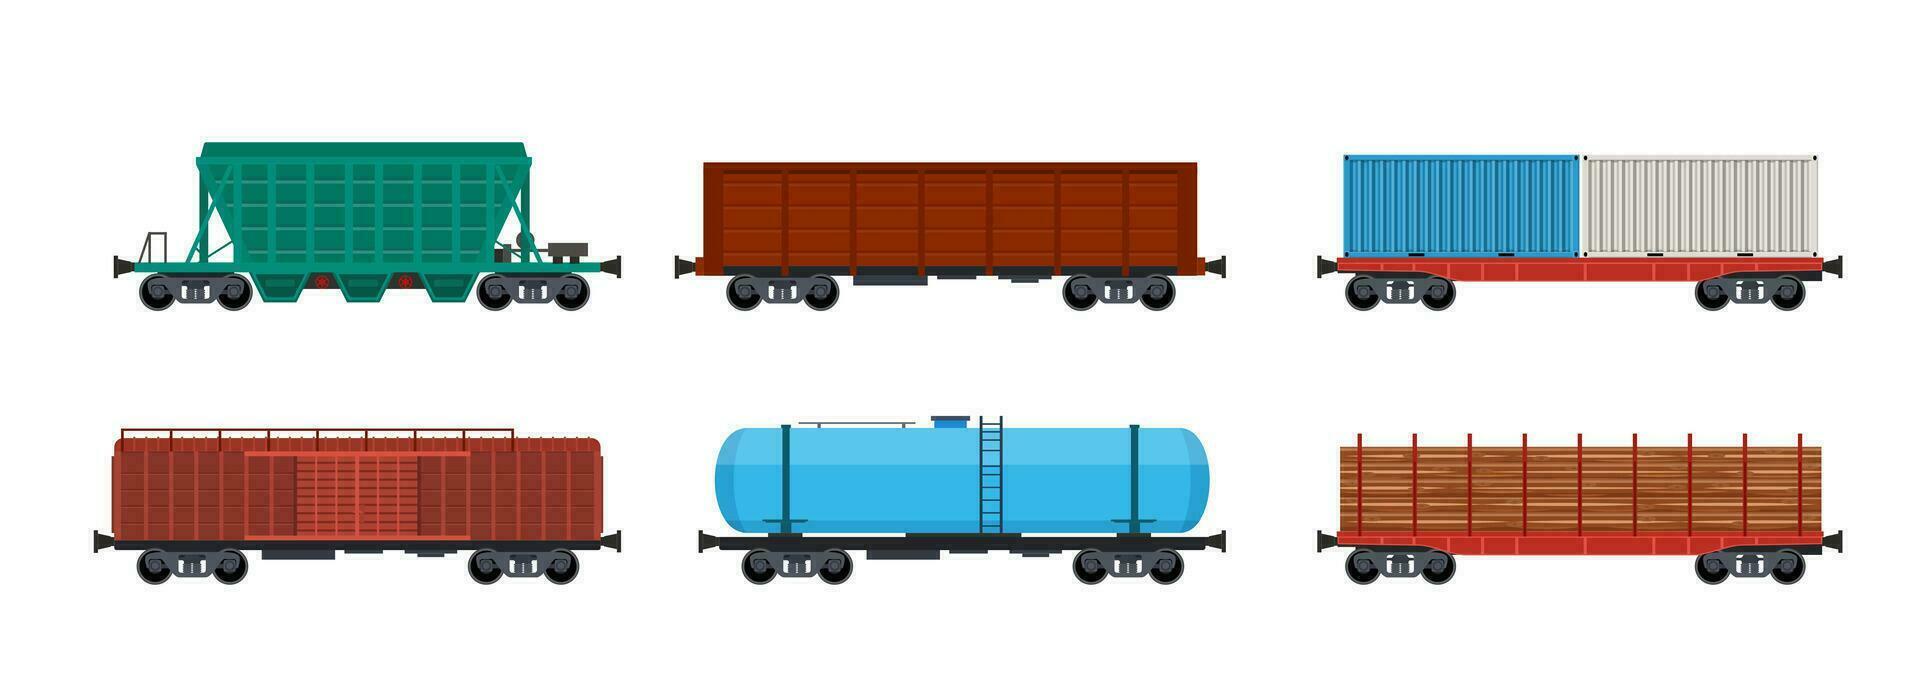 tåg frakt vagnar, järnväg frakt och järnväg behållare. frakt tåg med vagnar, tankar, frakt, cisterner. industriell vagnar, sida se. vektor illustration i platt stil